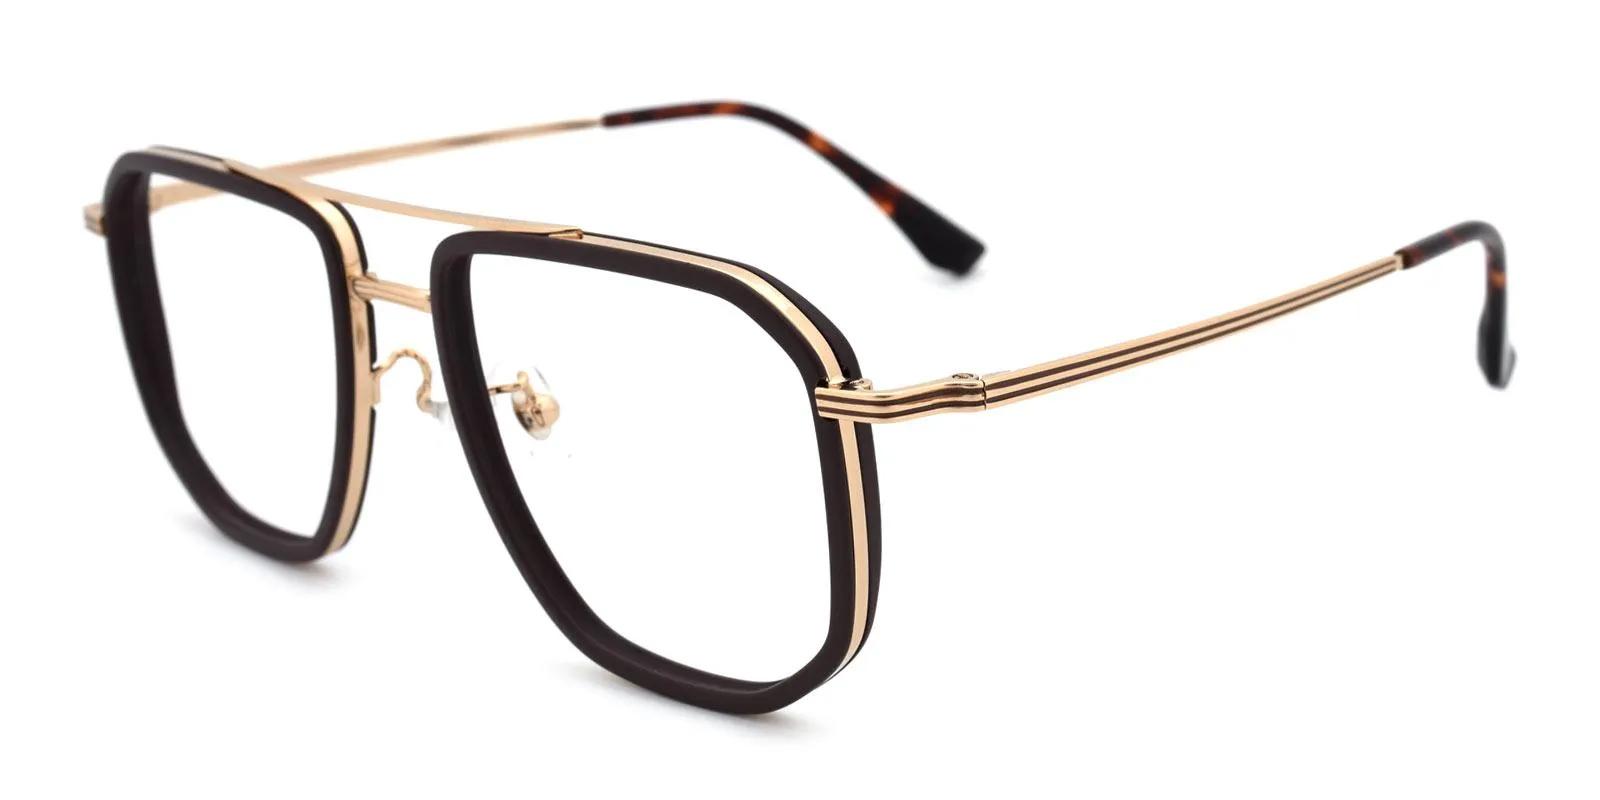 Doxoine Brown Titanium , TR Eyeglasses , NosePads Frames from ABBE Glasses